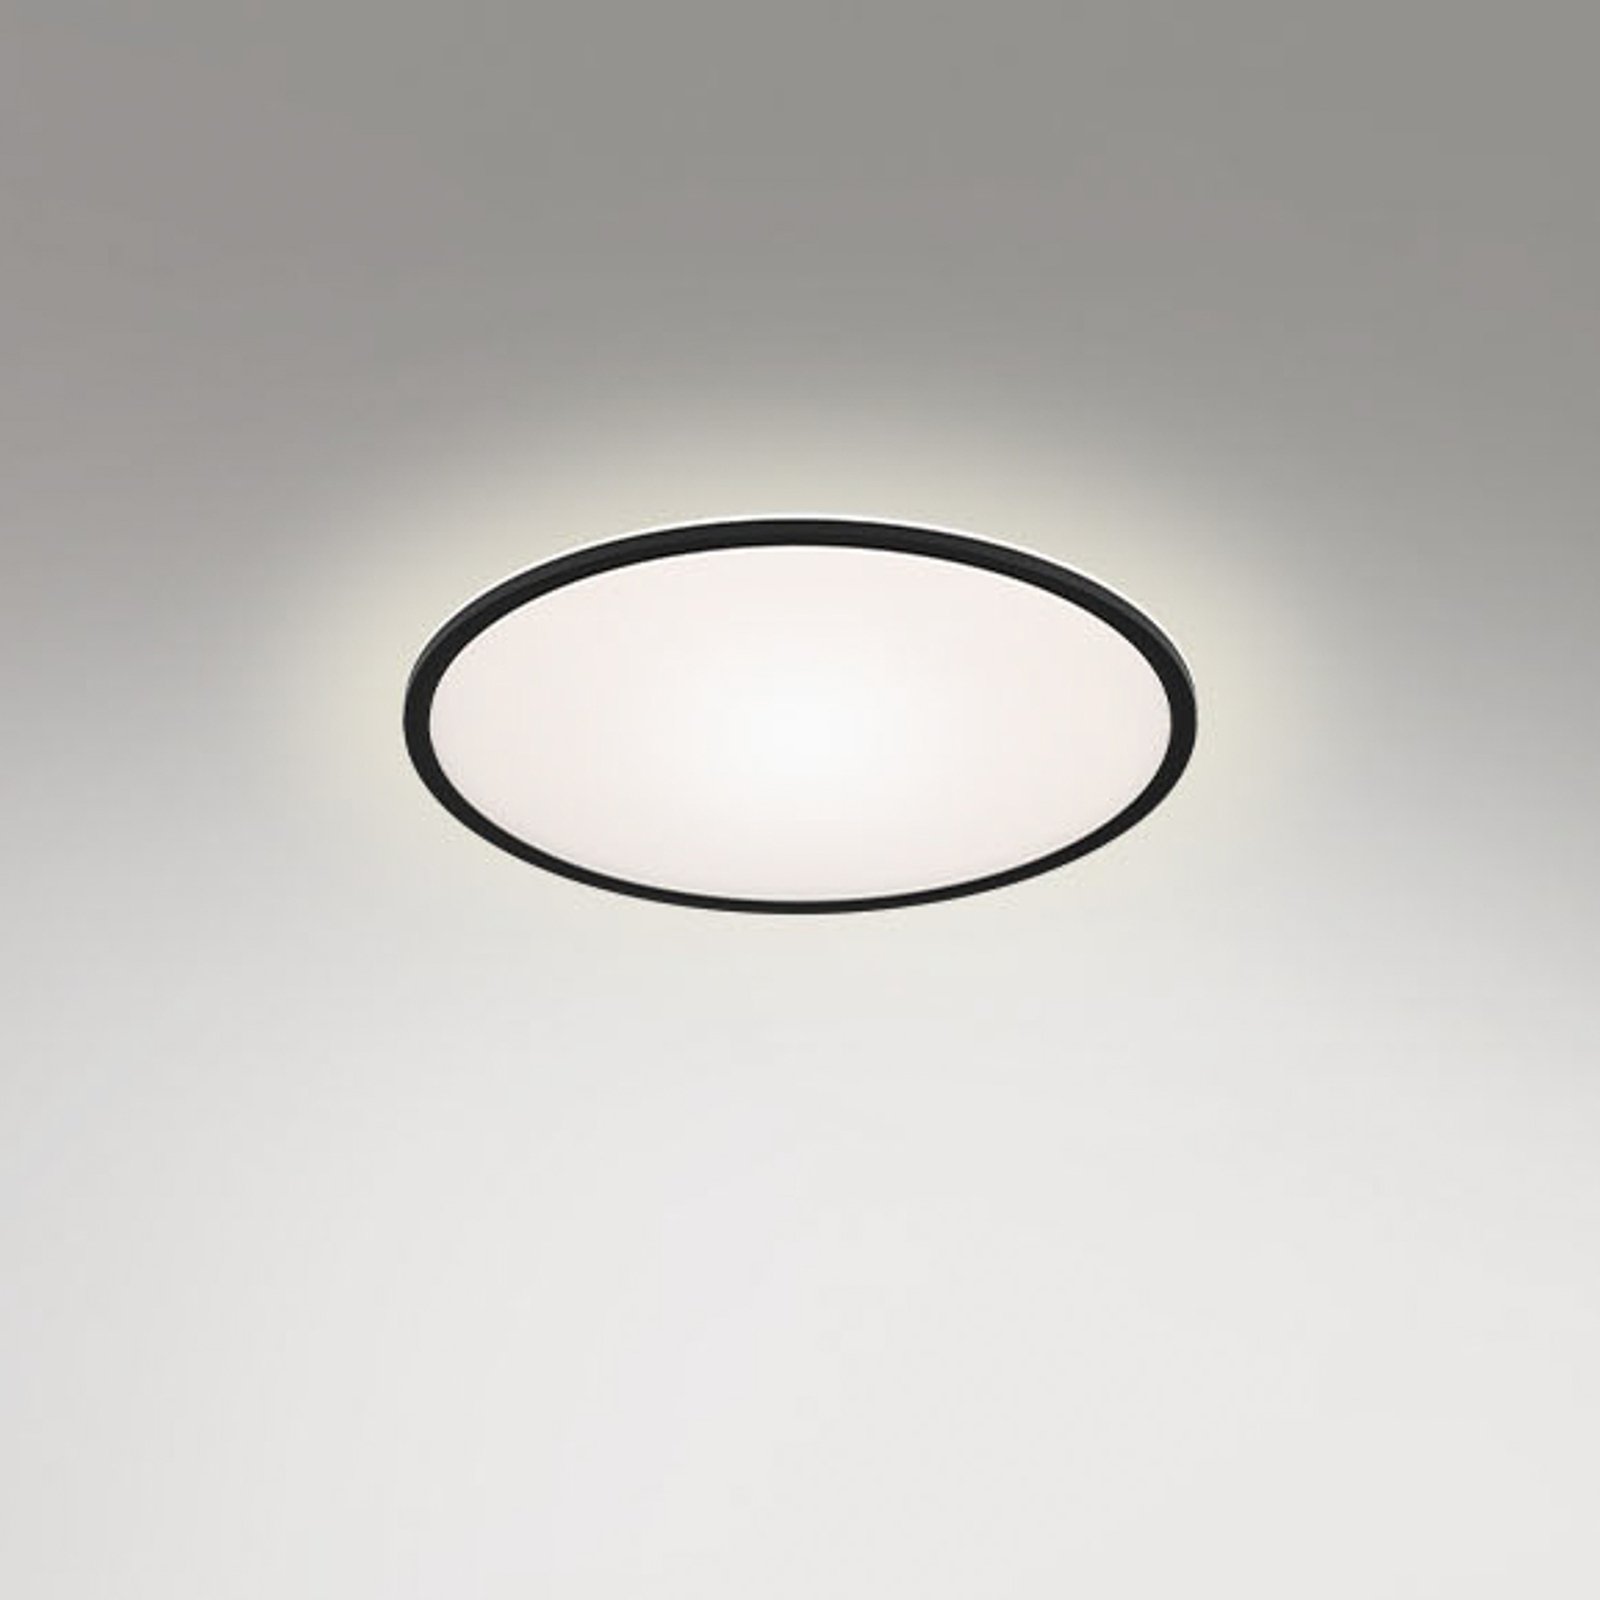 LED plafondlamp Runa met backlight, zwart